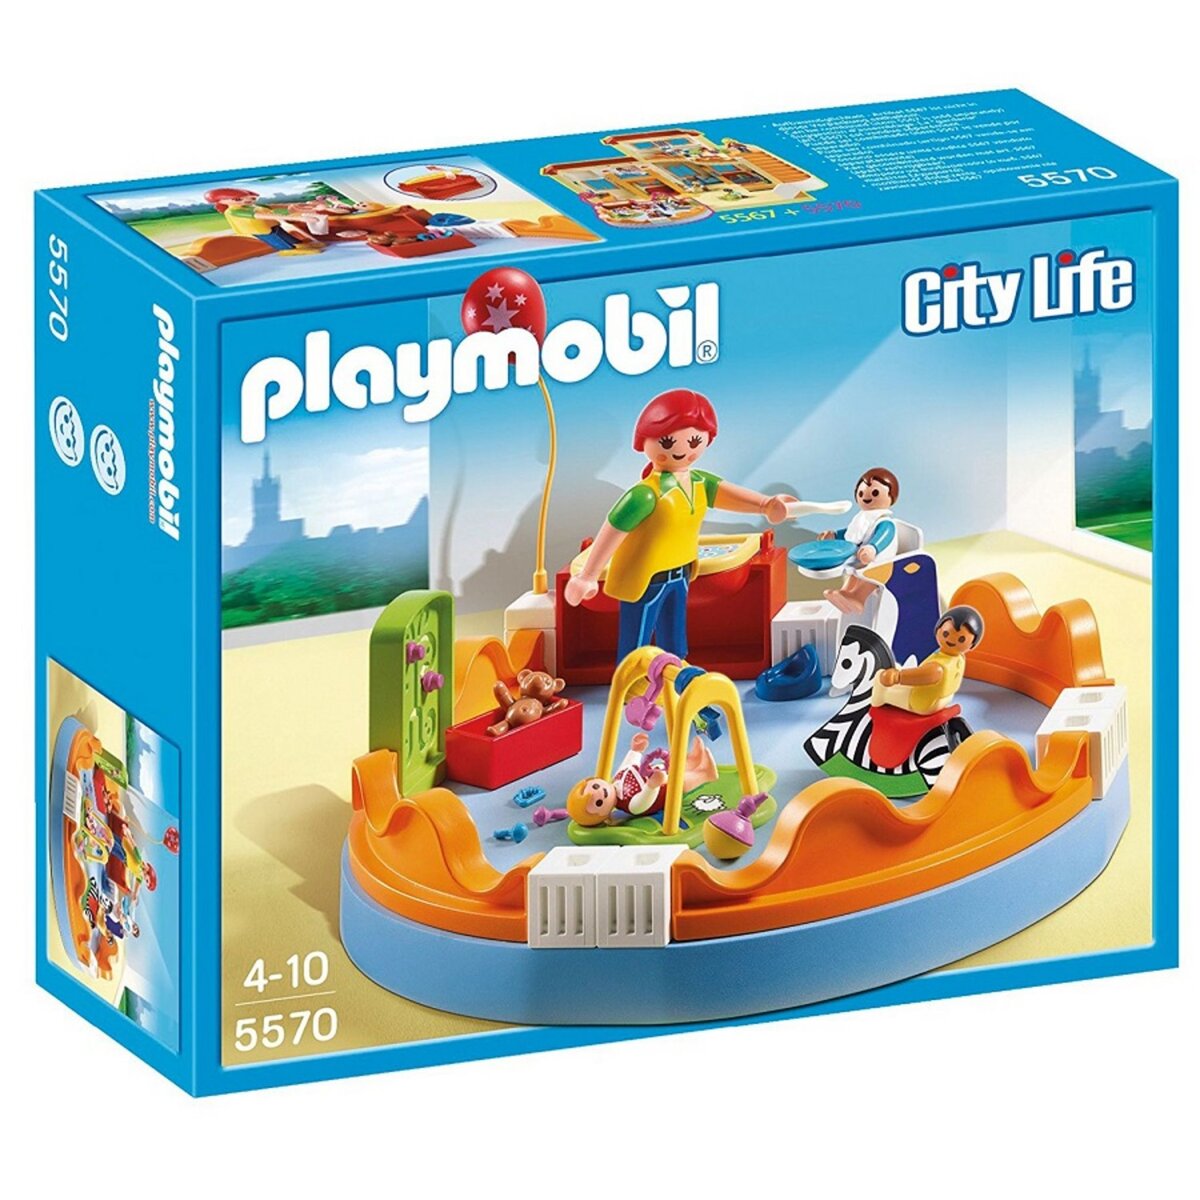 PLAYMOBIL 5570 - City Life - Espace crèche avec bébés